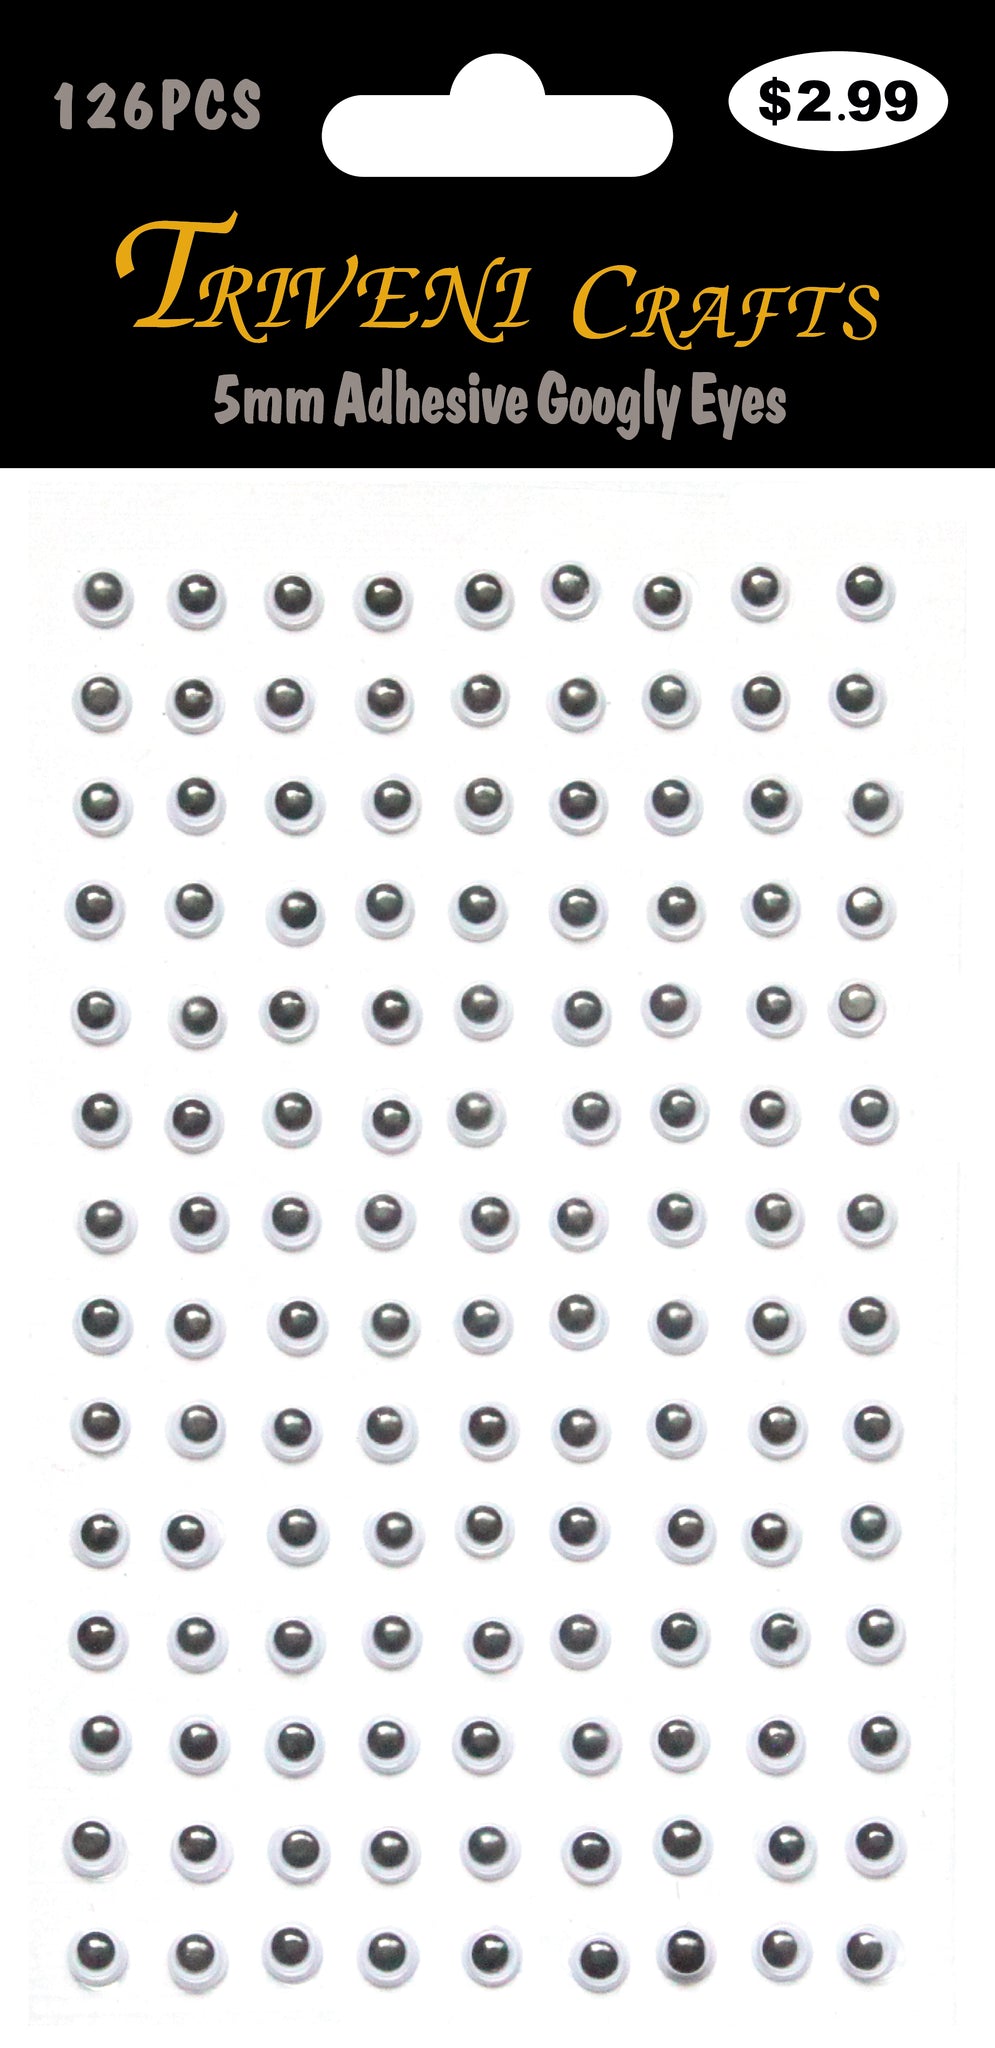 5mm Adhesive Googly Eyes